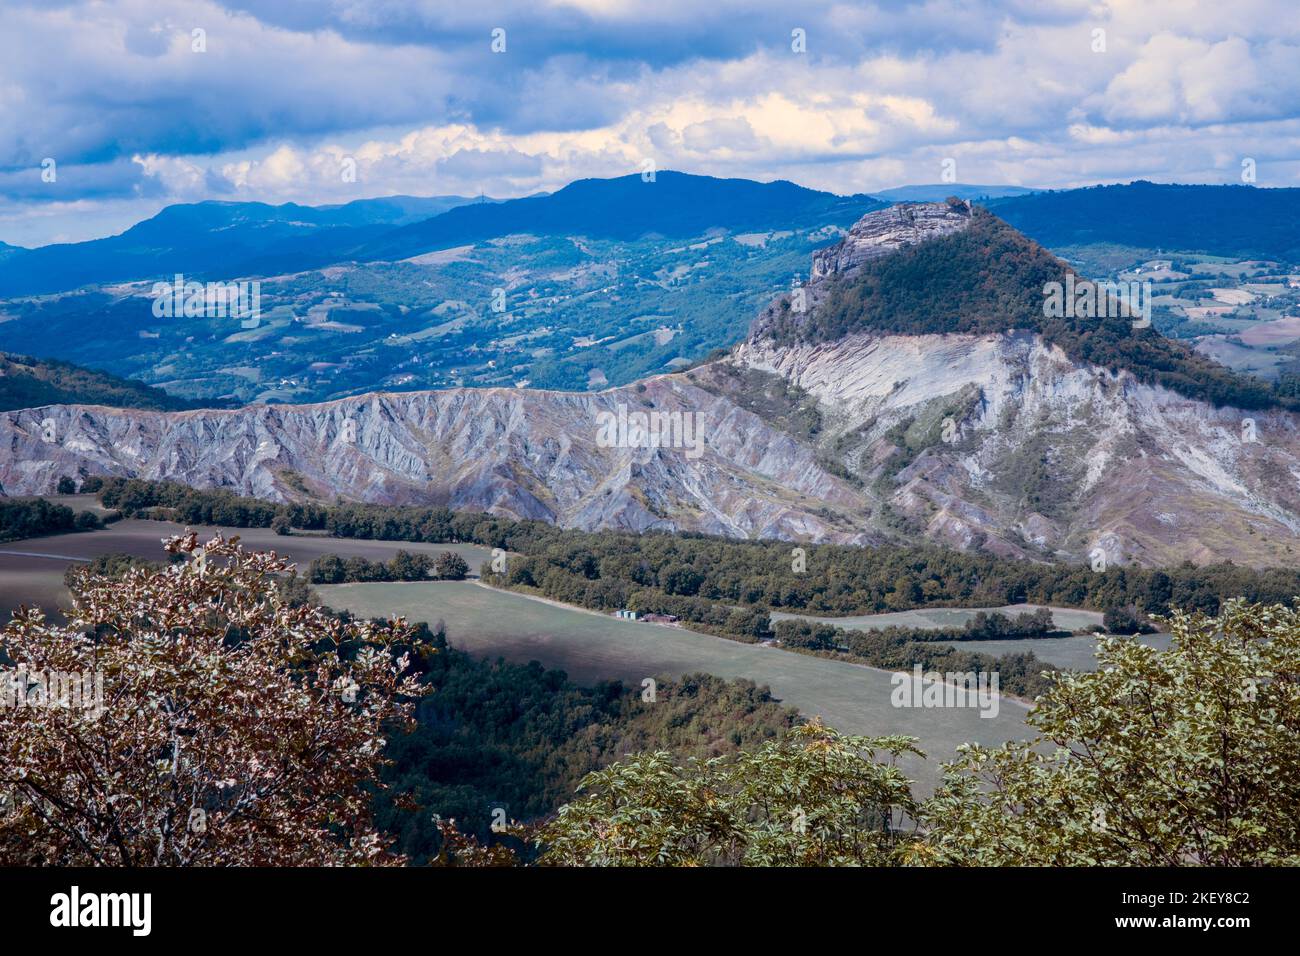 Le colline e il paesaggio da San Leo, San Leo, Rimini, Emilia Romagna, Italia, Europa Foto Stock